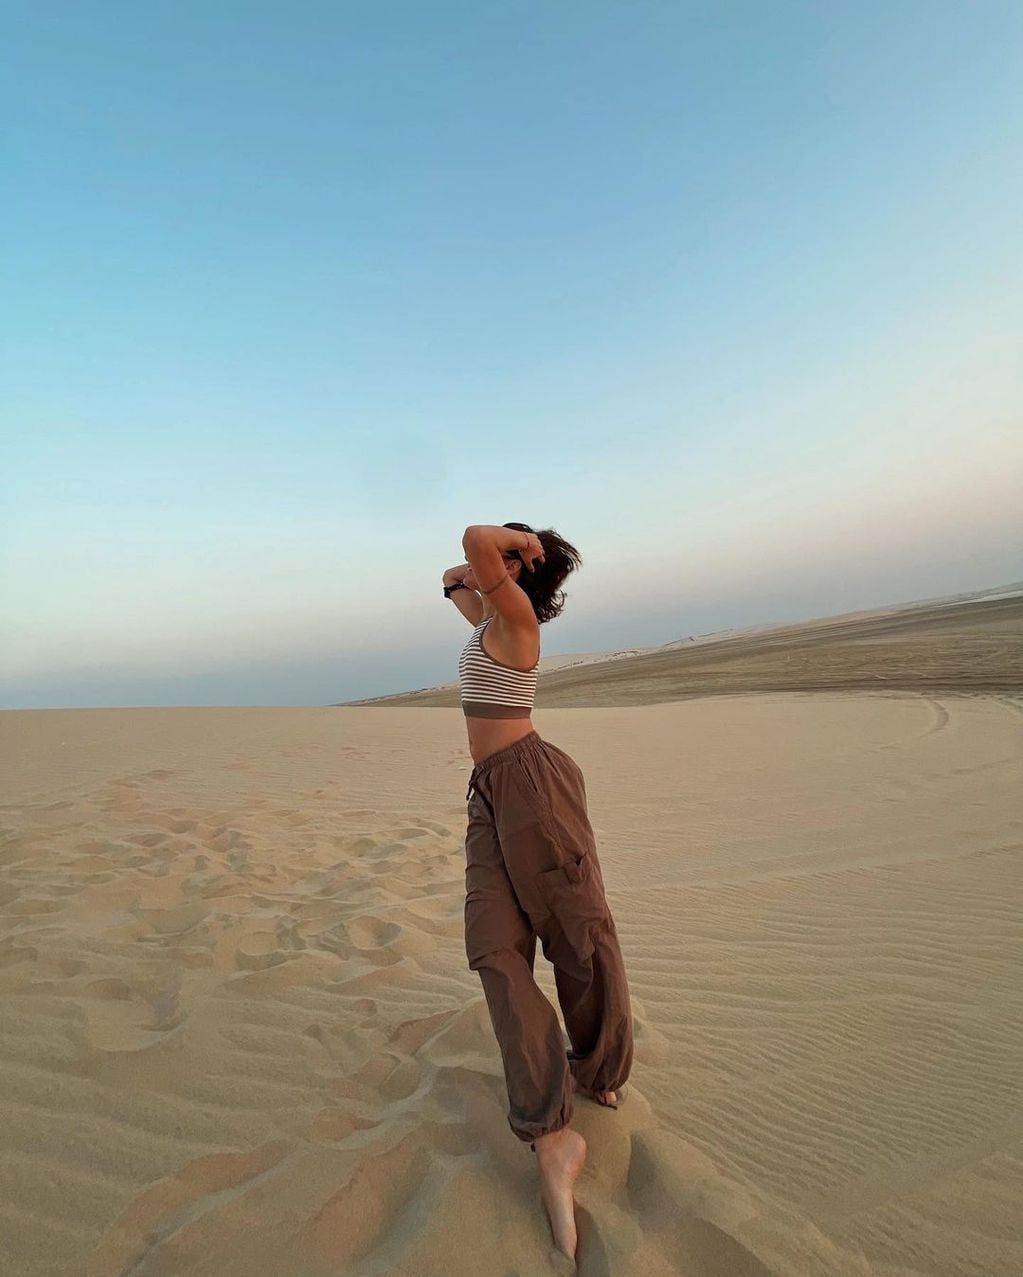 Flor conoció el desierto durante su viaje a Qatar.